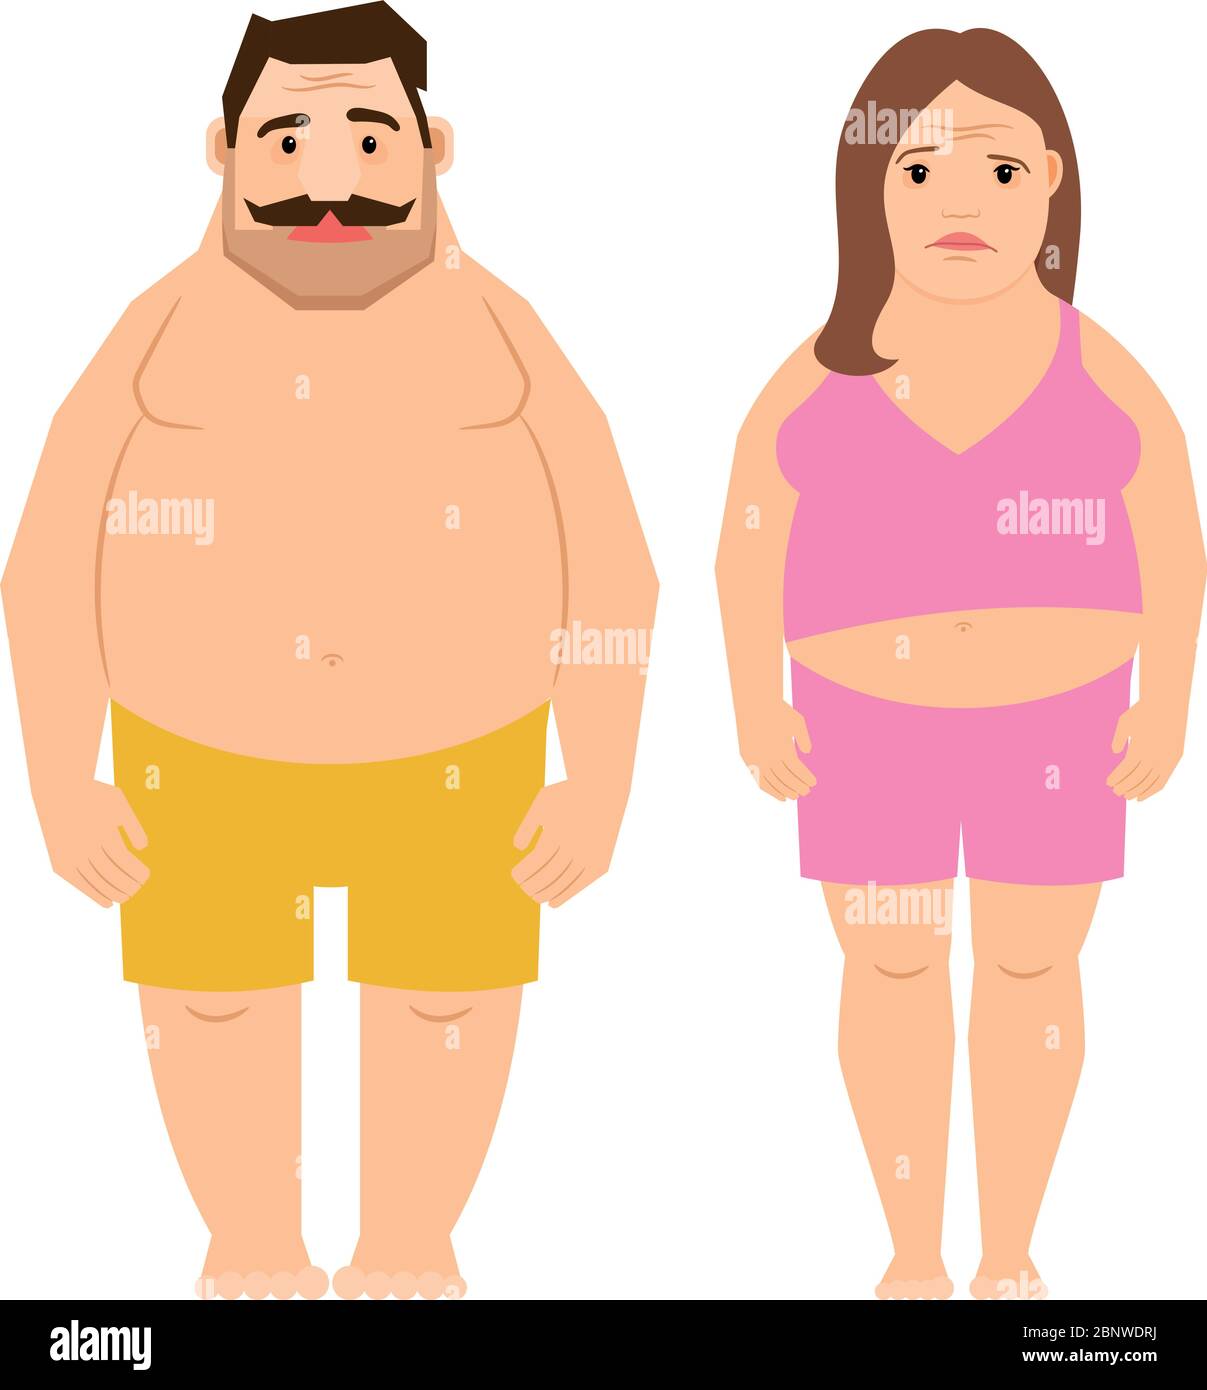 Personas obesas Imágenes recortadas de stock - Alamy